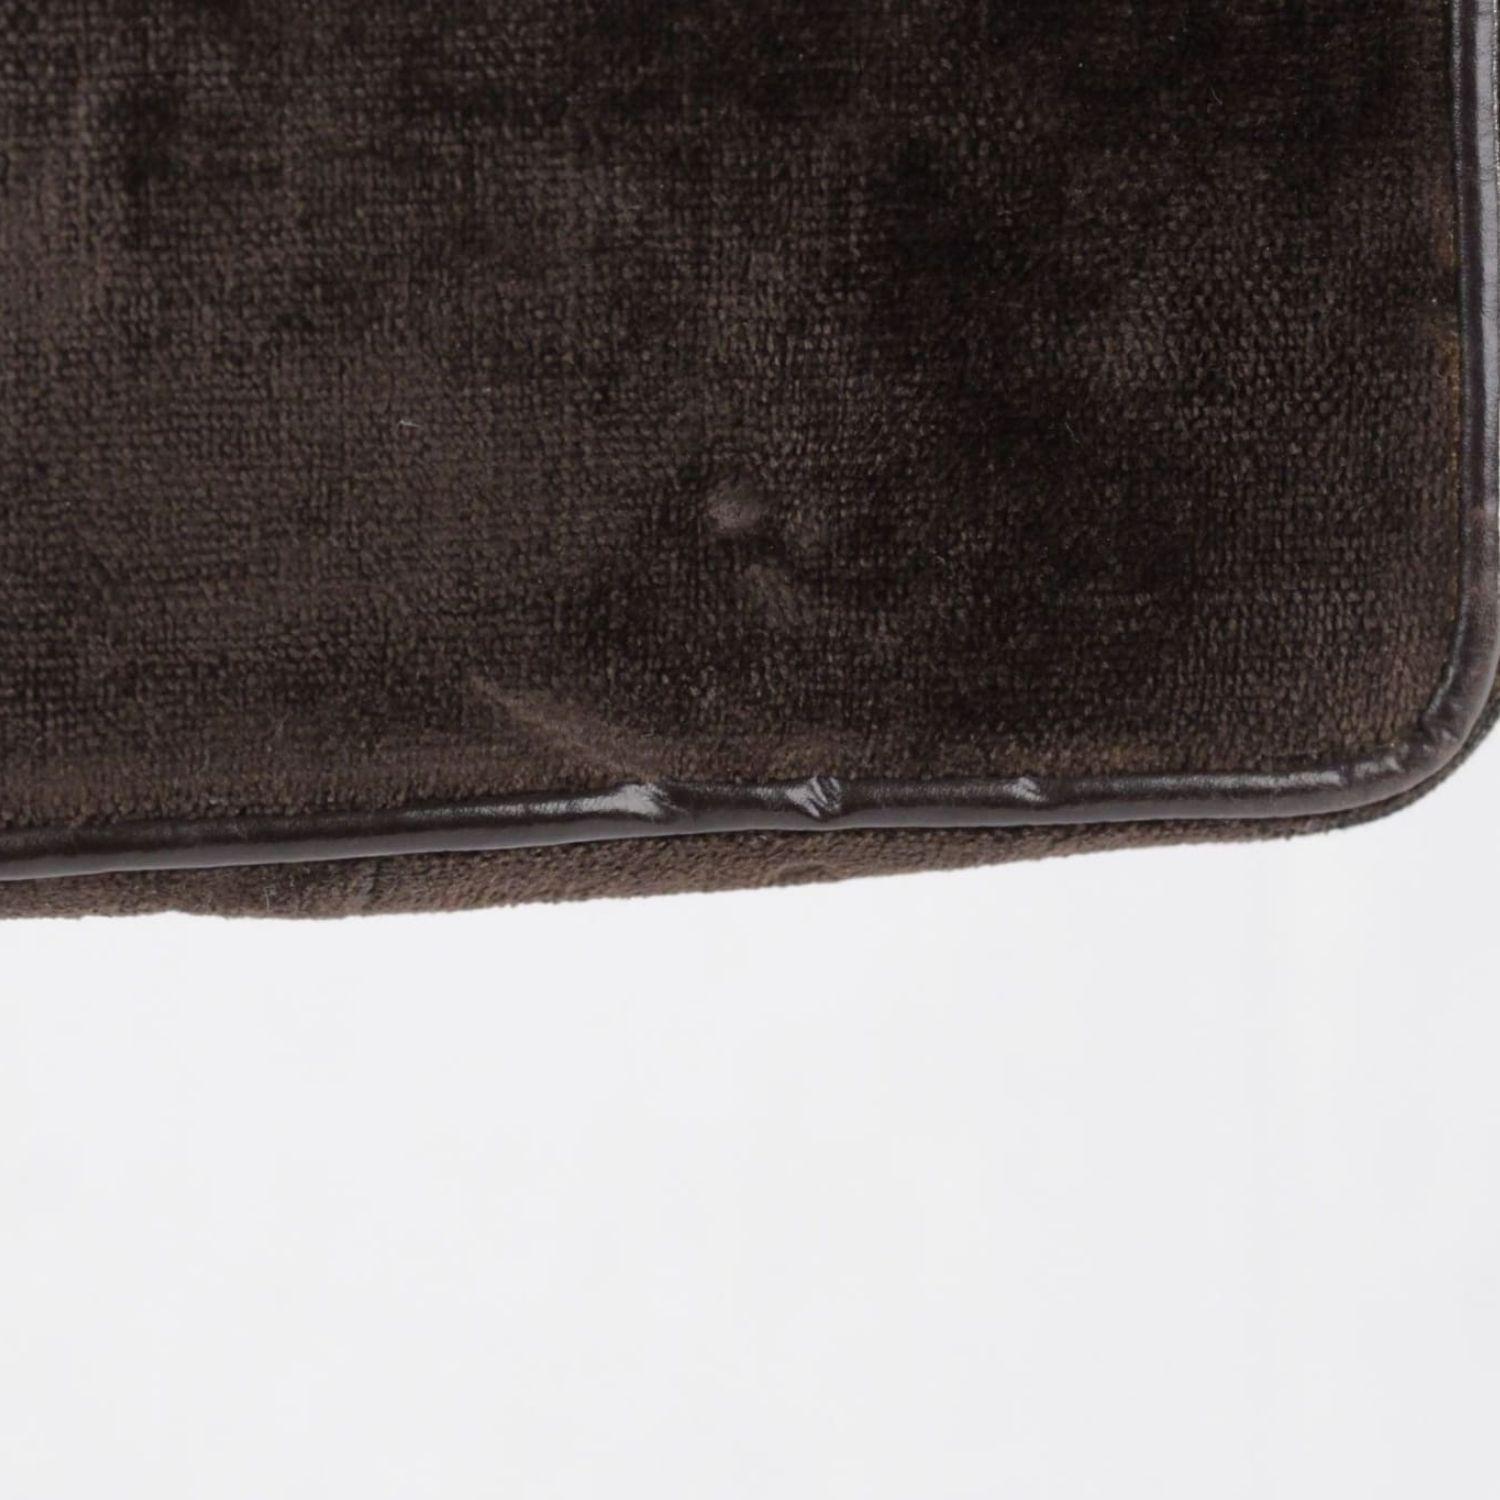 Roberta di Camerino Vintage Brown Cut Velvet Crossbody Shoulder Bag 2